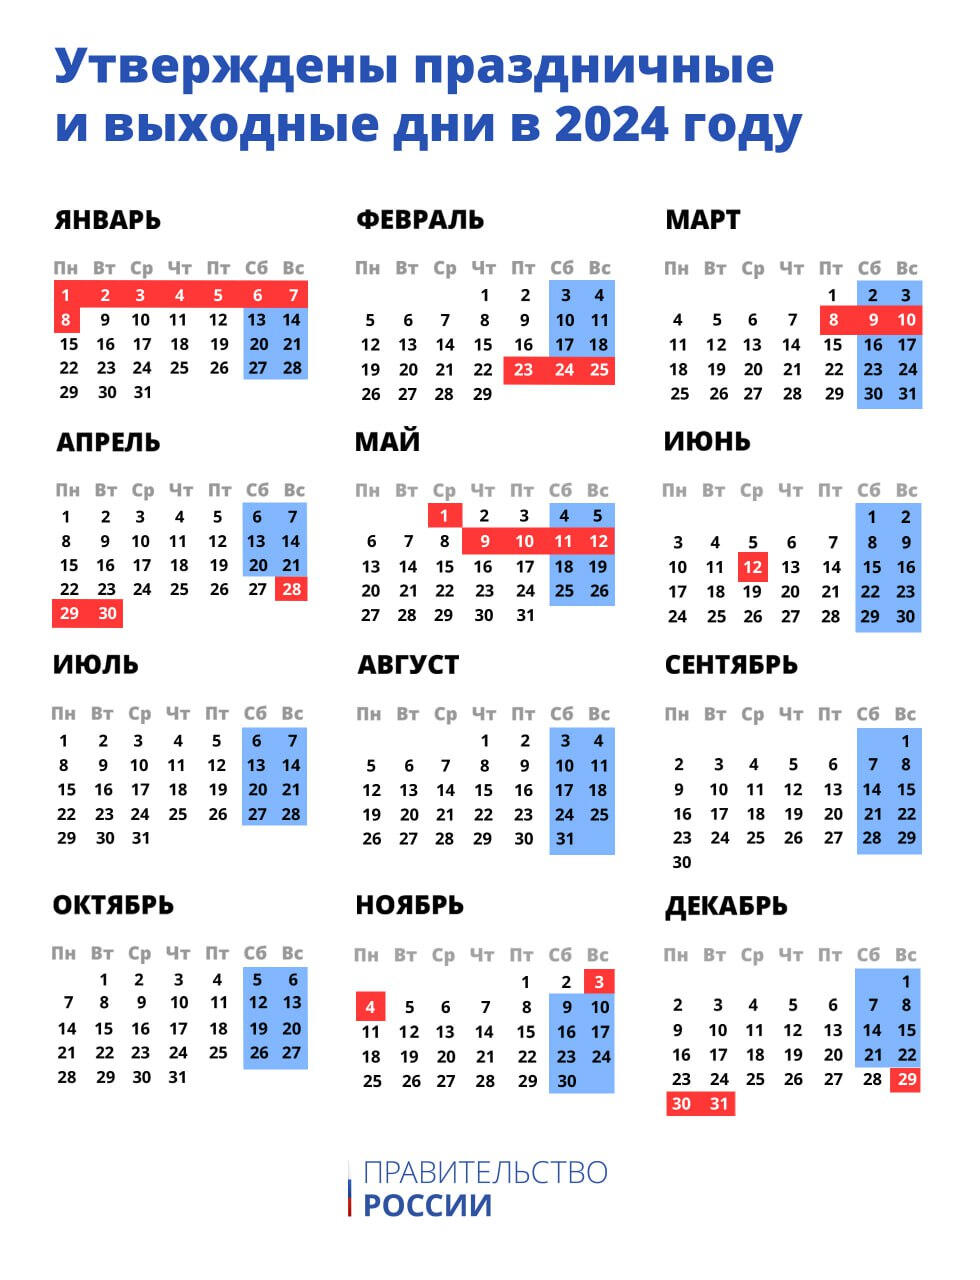 В России утвердили праздники и выходные на 2024 год